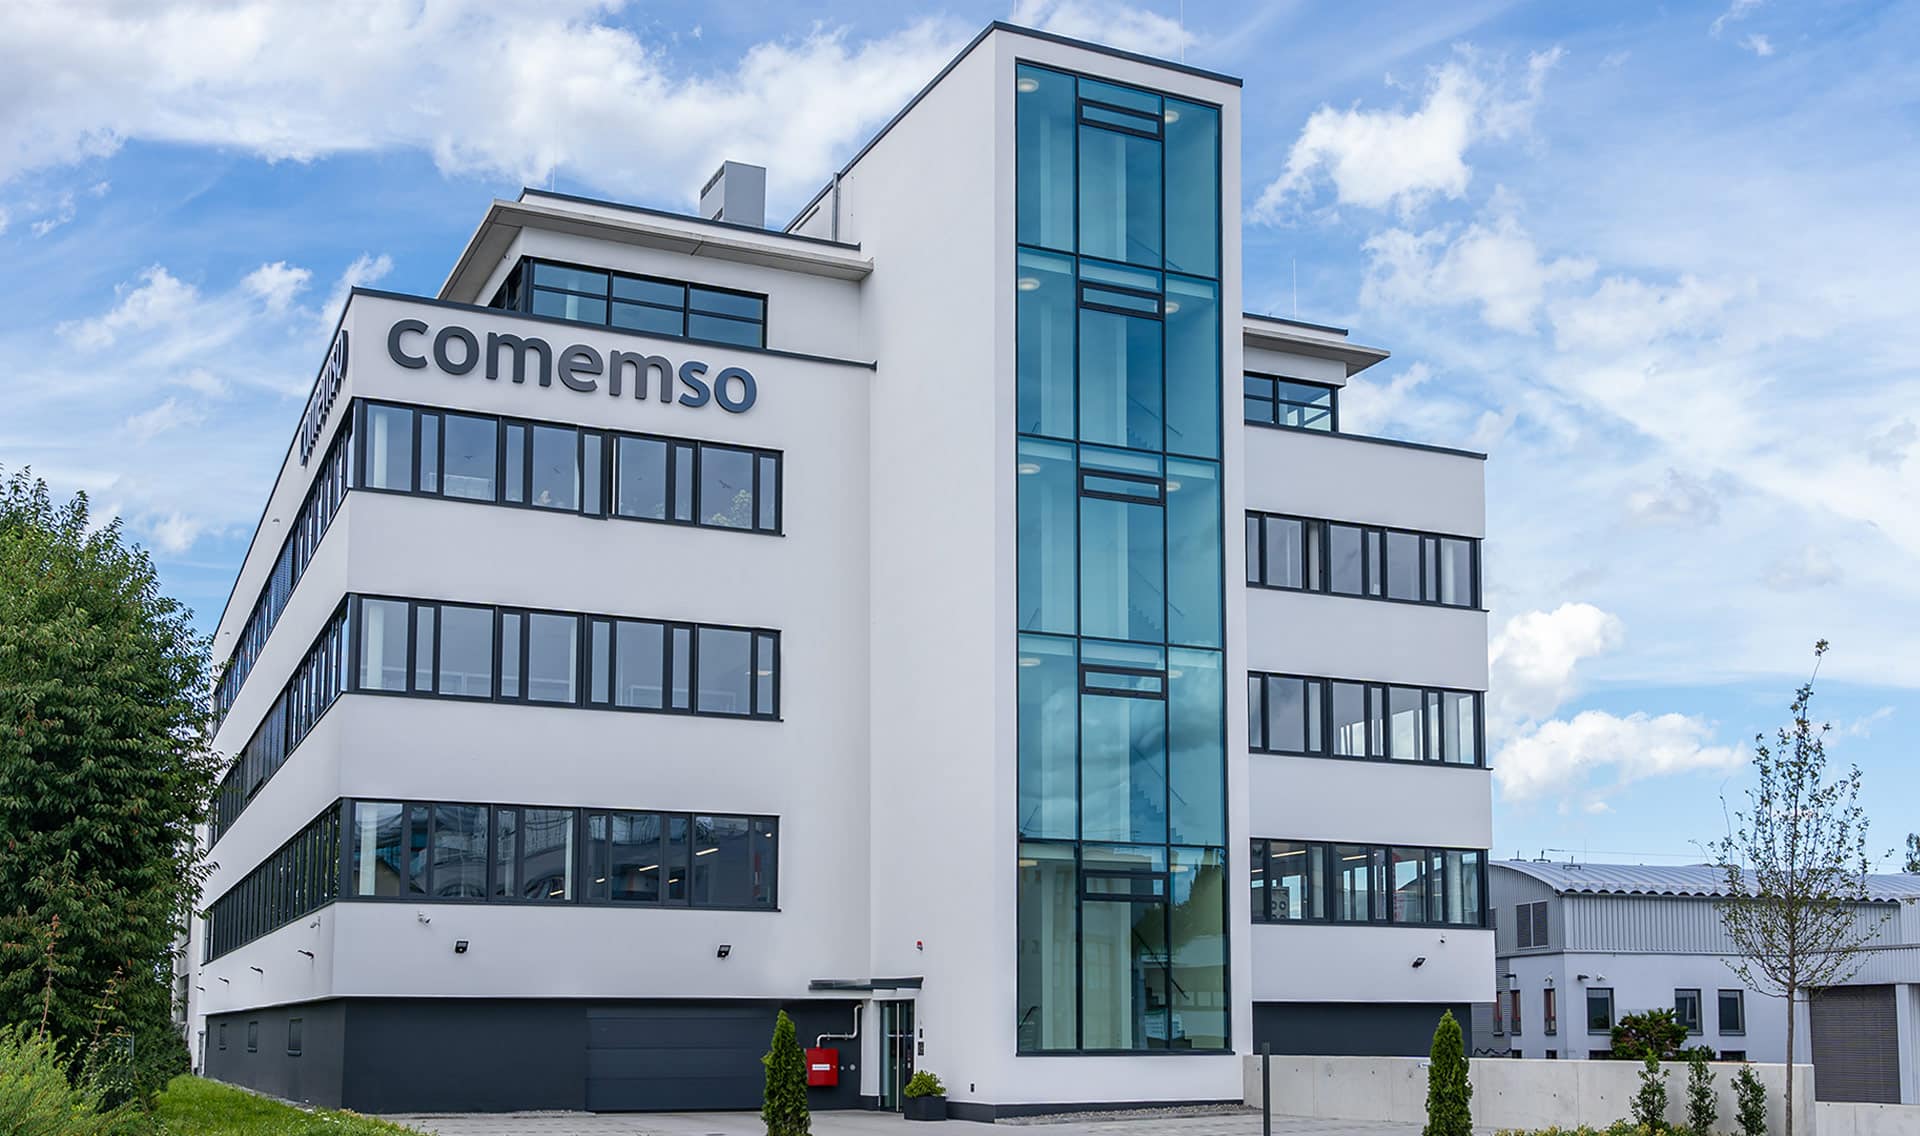 The comemso company building in Ostfildern near Stuttgart